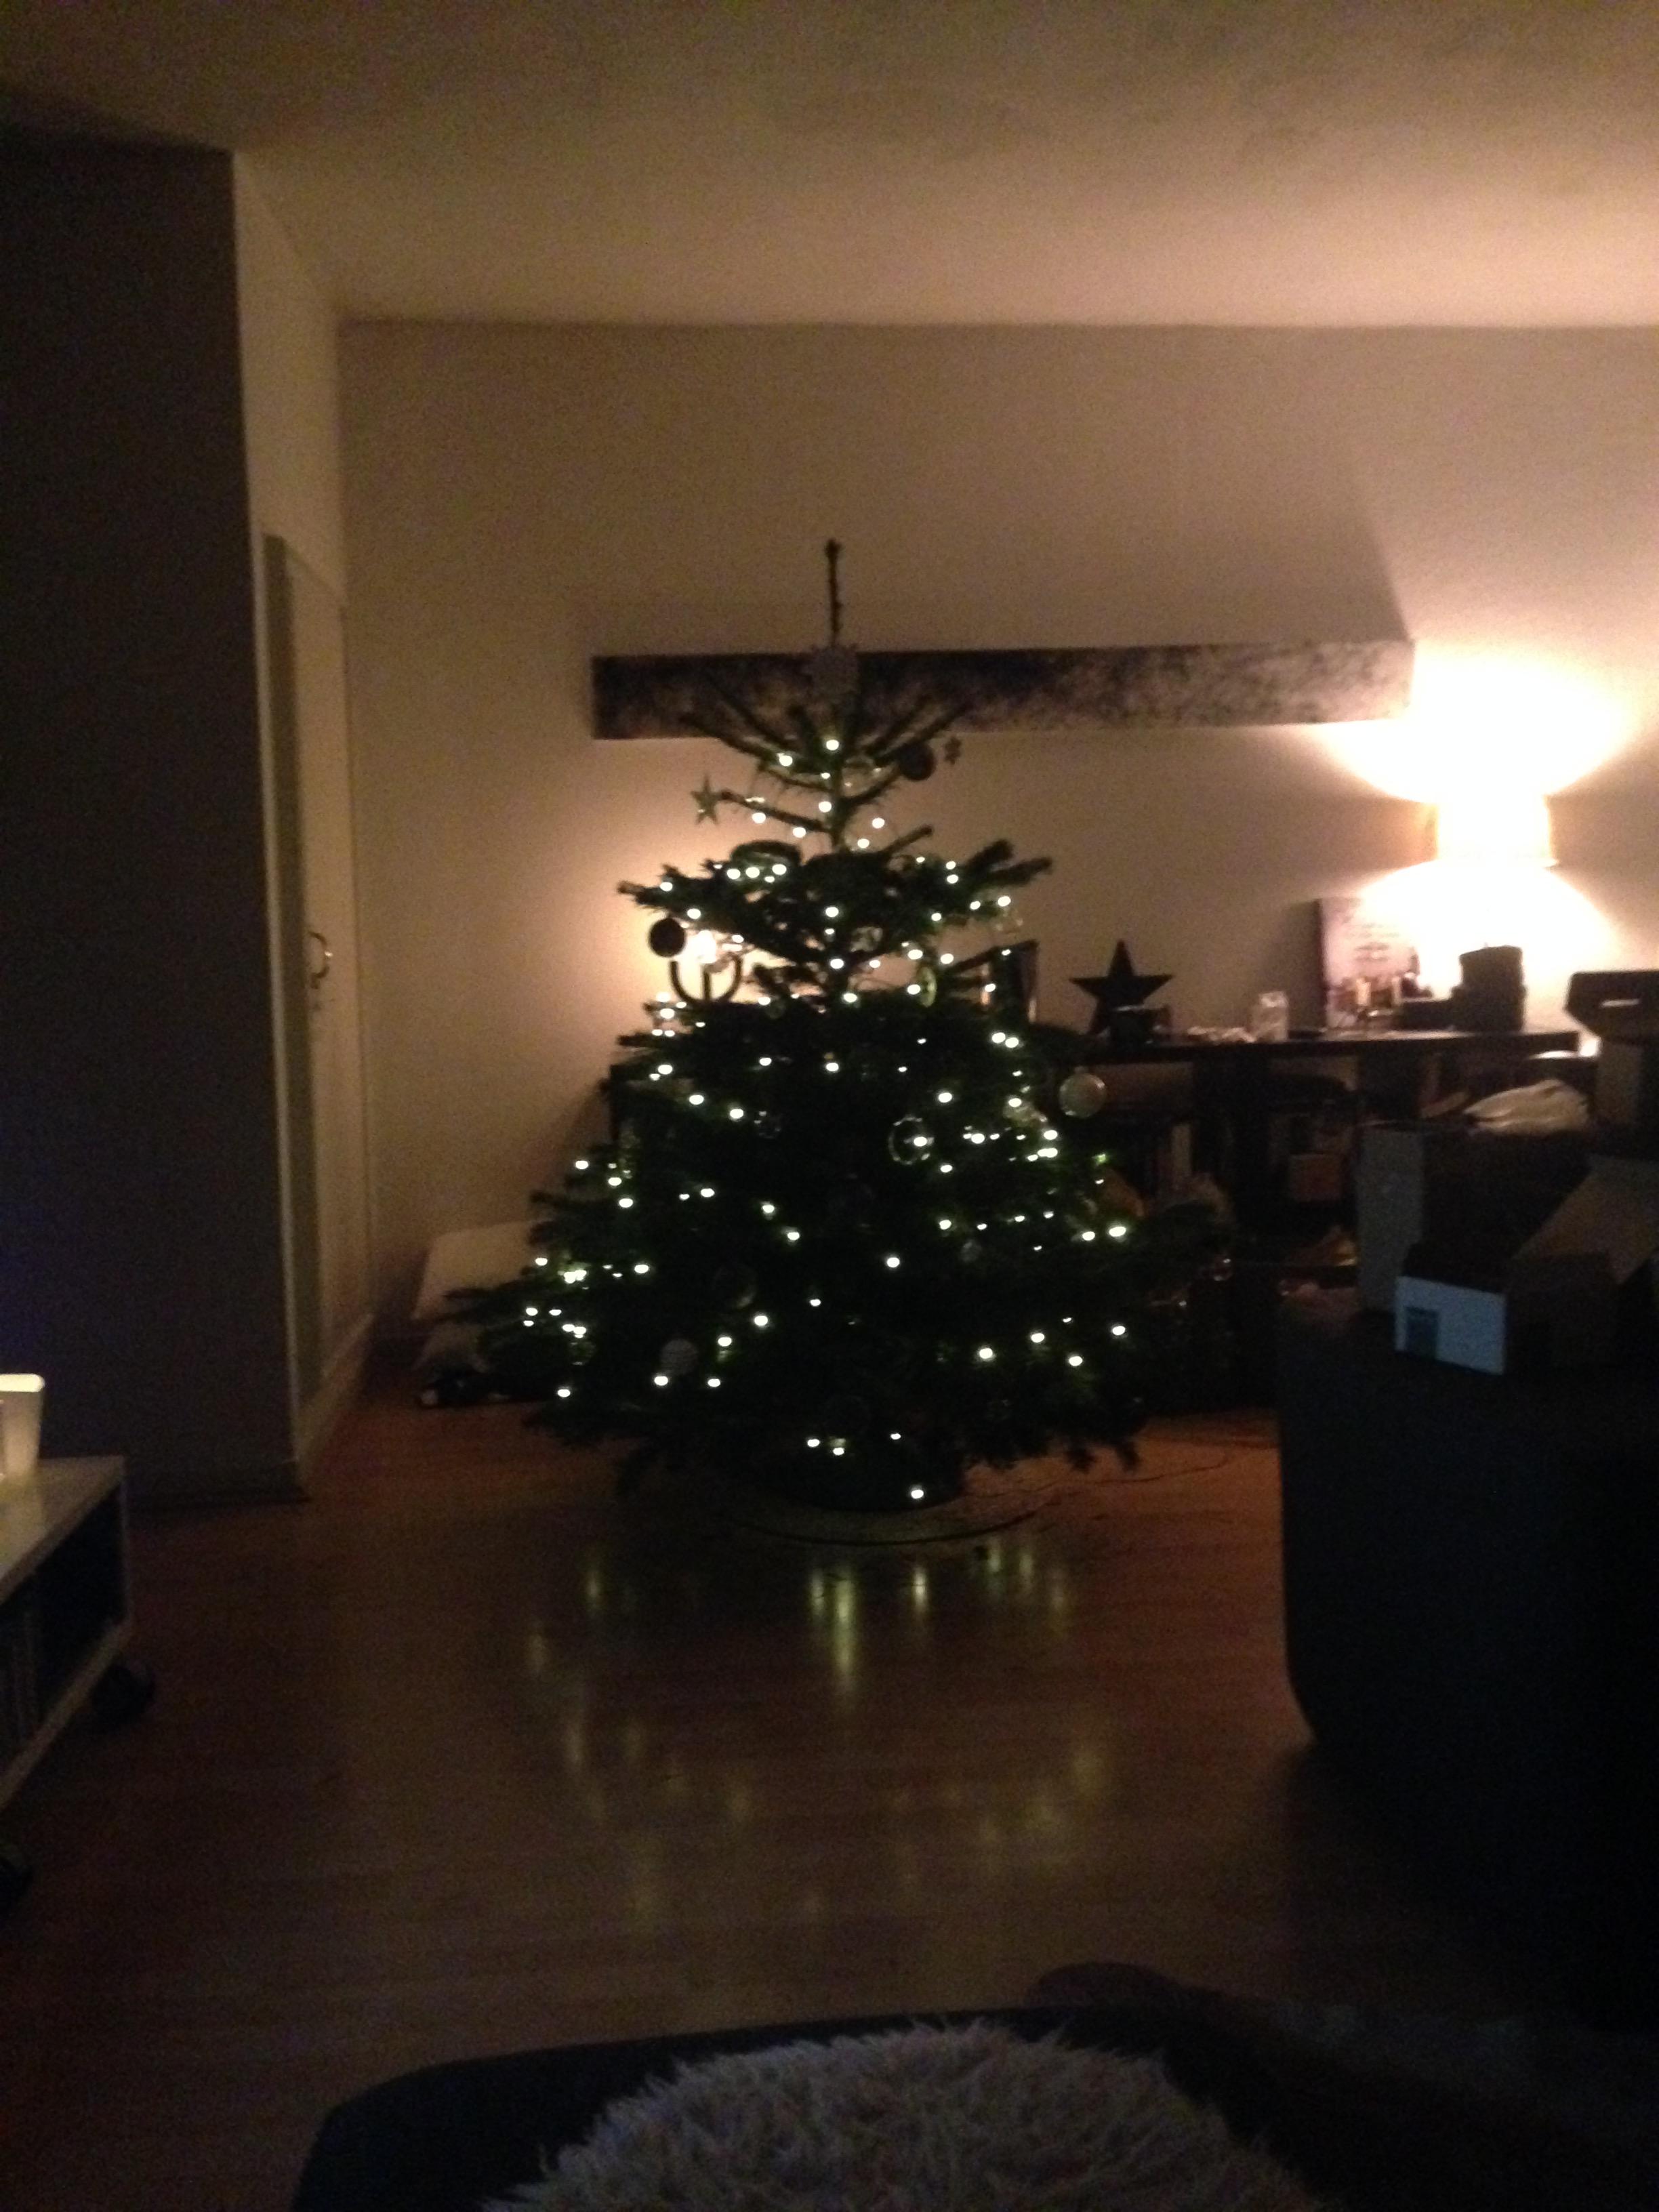 Xmas Is coming ...
#weihnachten#lichterglanz